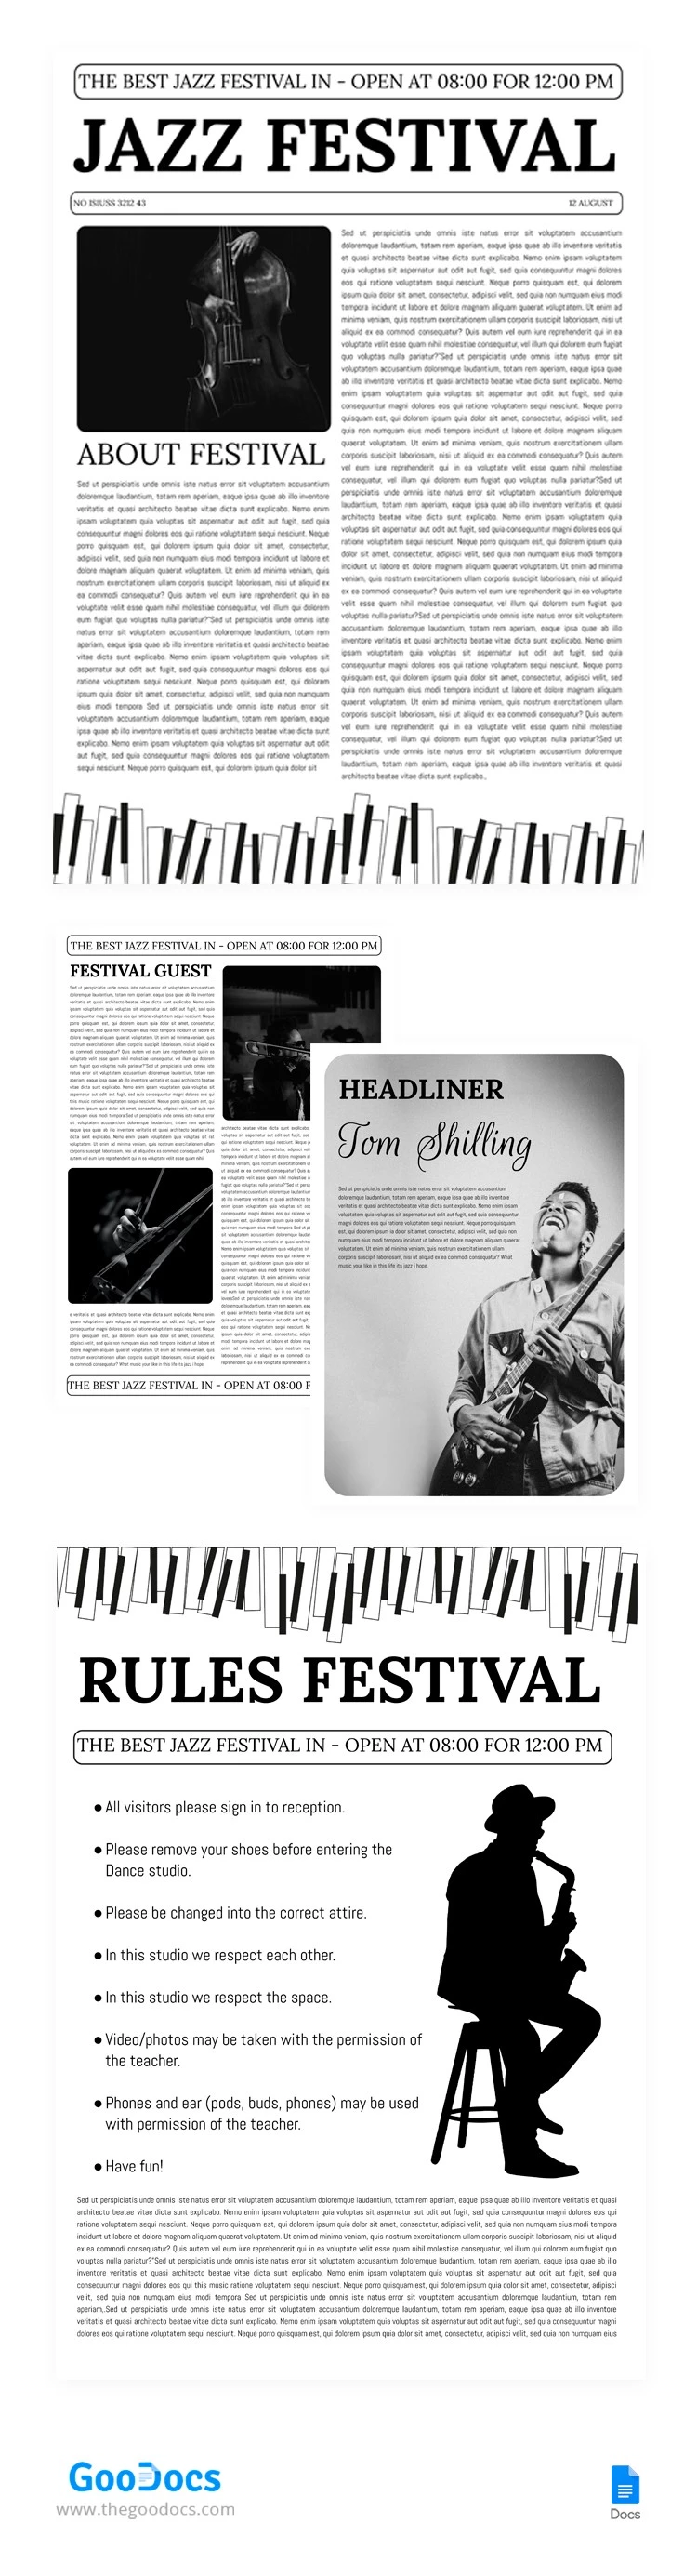 Jazz Festival Zeitung - free Google Docs Template - 10065741